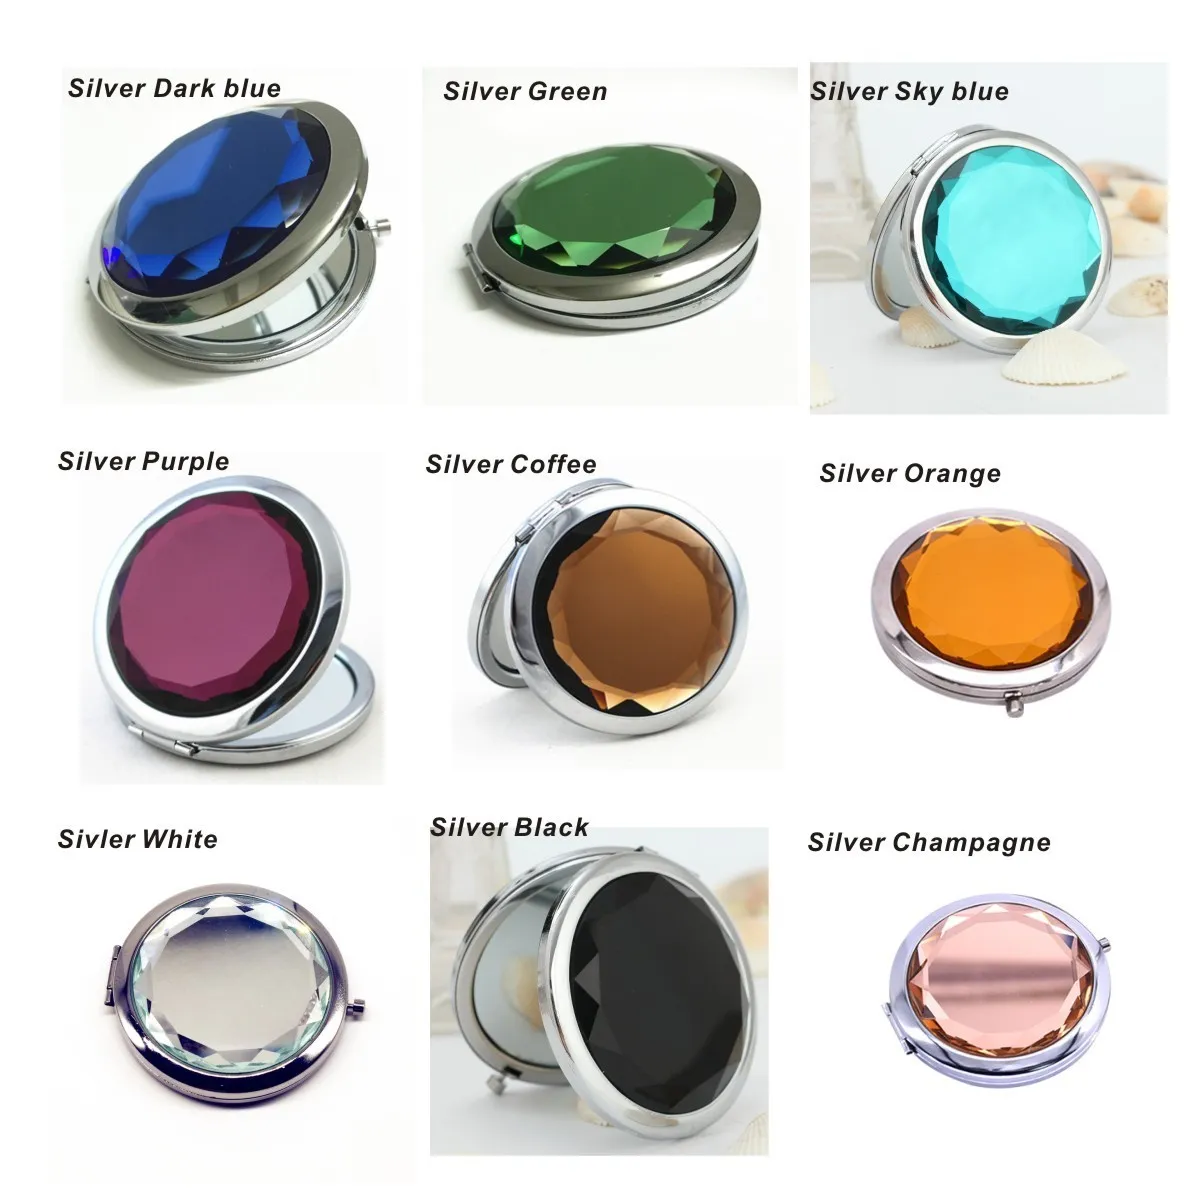 1 Stück Kristall-Make-up-Spiegel, tragbar, rund, gefaltet, kompakt, Gold, Silber, Taschenspiegel, Make-up für personalisiertes Geschenk 8825016